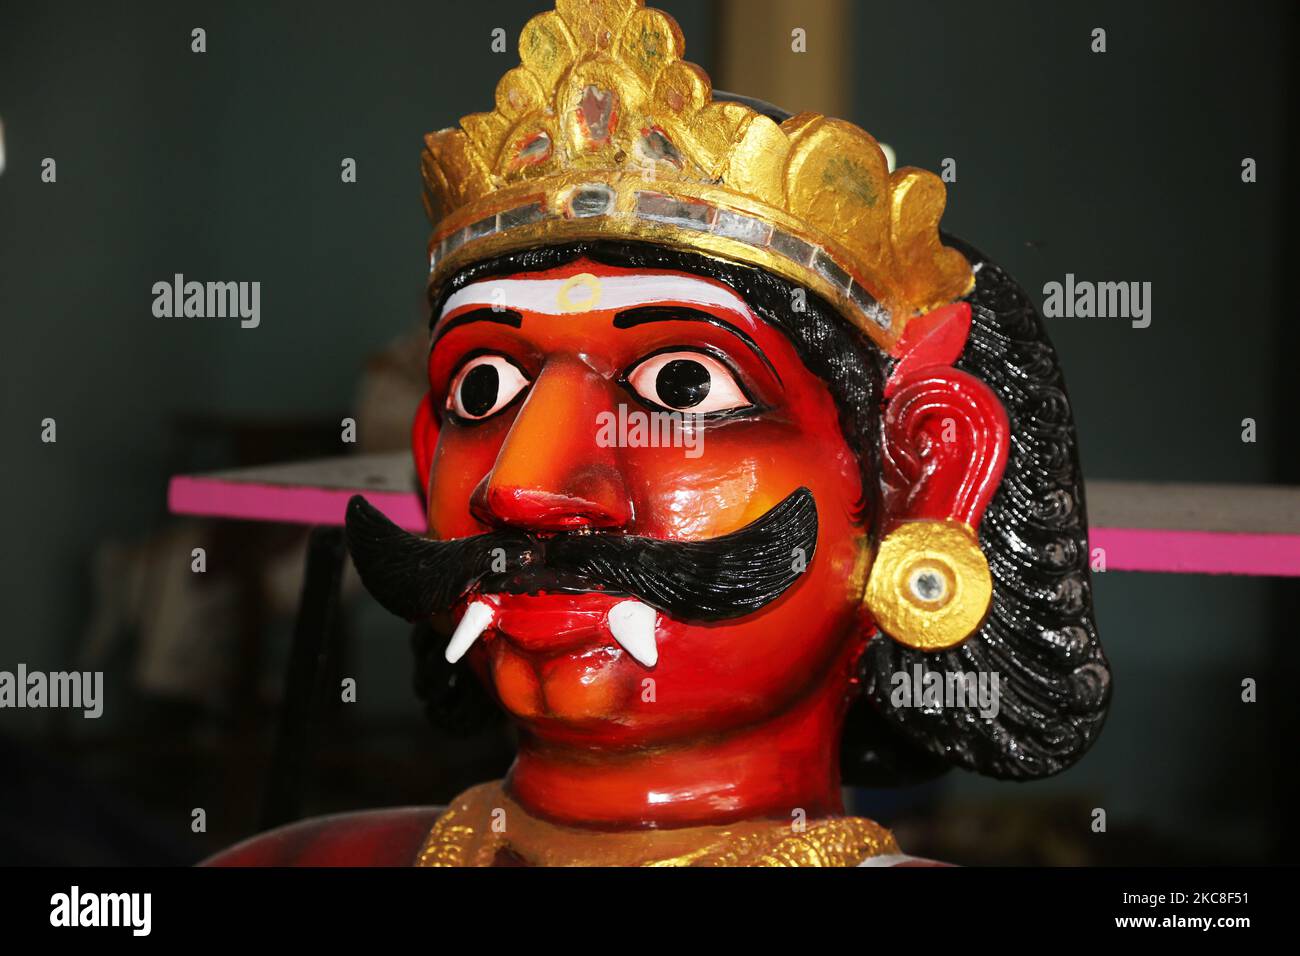 Frisch gemalte Figur des Dämons Sooran im Arasadi Vinayagar Tempel (Arasadi Sithio Vinayagar Kovil) in Jaffna, Sri Lanka. Die Figur wird in der kommenden Sooran Por Festival verwendet werden (auch als Sooran Poor, Sooran Porr, Soorasamharam, Surasamharam genannt) ist eine Nachstellung der Schlacht von Lord Murugan und Soorapathman. Der Legende nach besiegte Lord Murugan den Dämon Soorapathman (Sooran) und seine Armee mit der heiligen Vel (Lanze), die ihm von seiner Mutter gegeben wurde. Lord Murugan kämpfte sechs Tage lang, und am letzten Tag befreite er die Devas (Götter) von Asuras (Dämonen). Sooran Por wird an ce gehalten Stockfoto